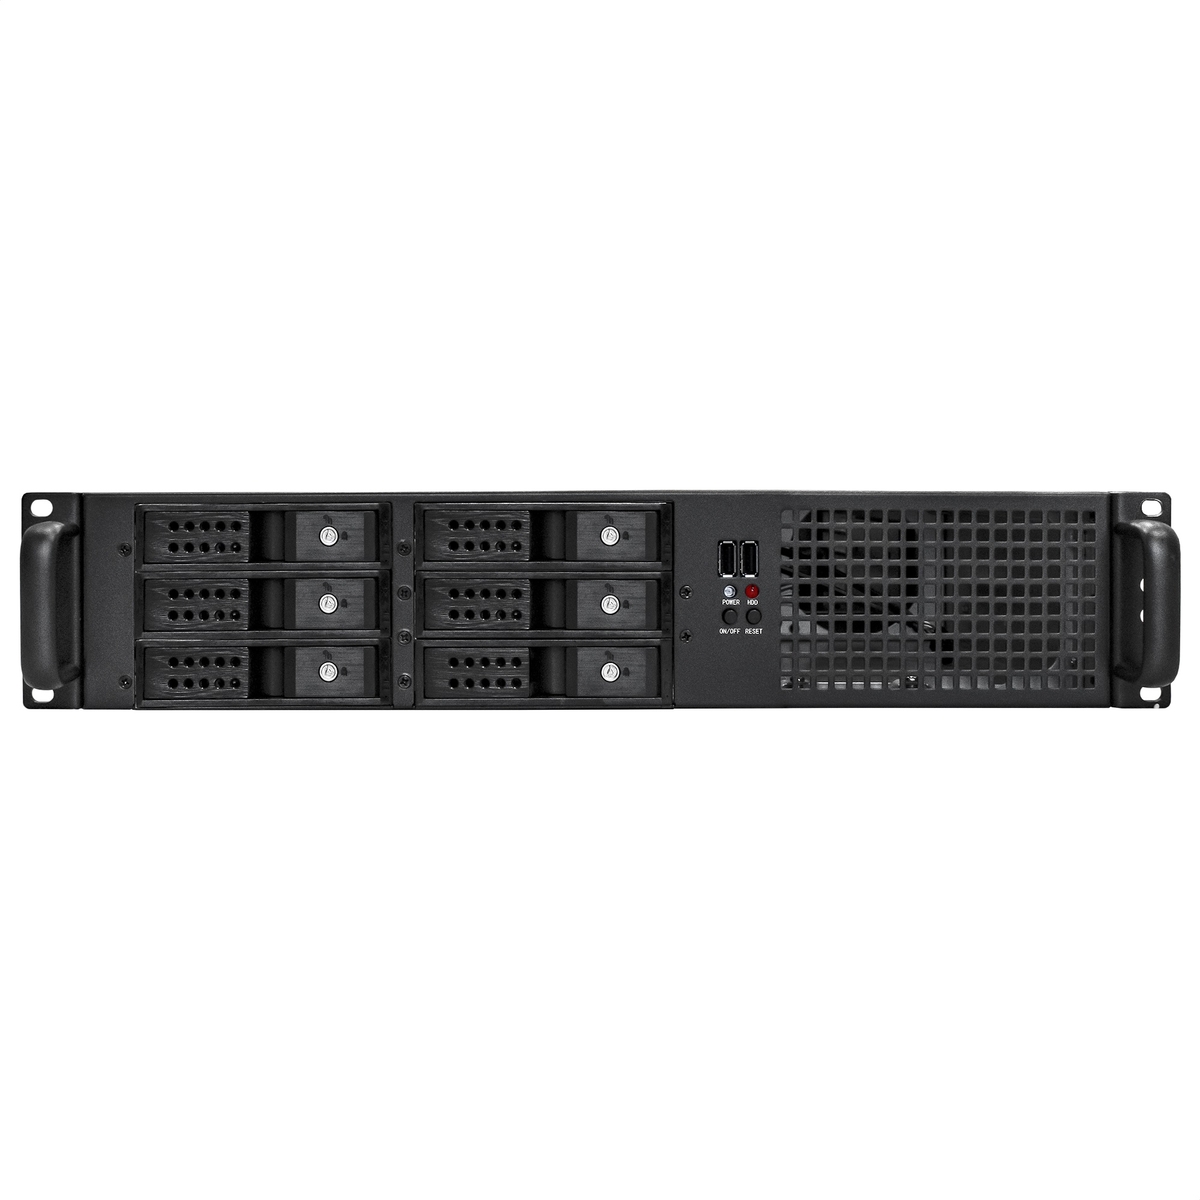 Server case ExeGate Pro 2U660-HS06/600ADS